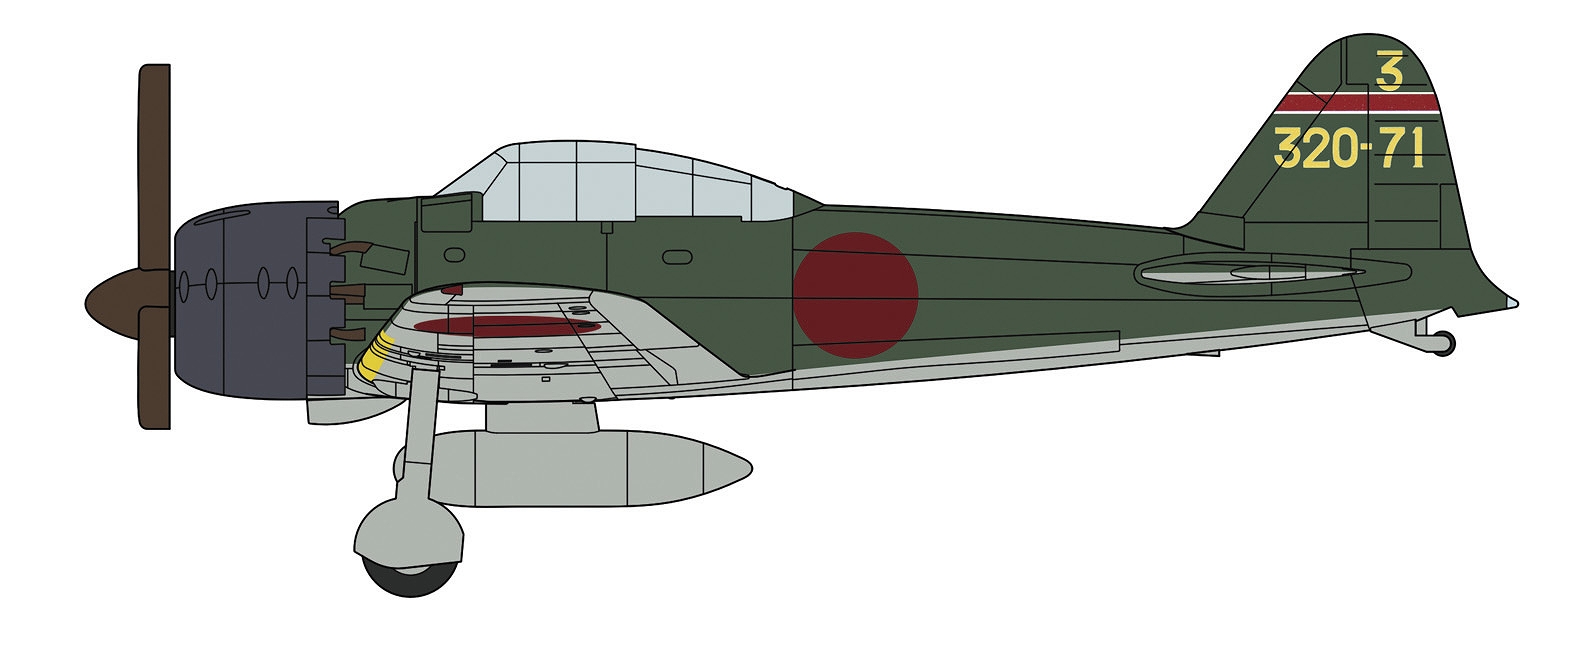 日本海軍 空母艦載機 後期セット 1/350 プラモデルキット QG62 